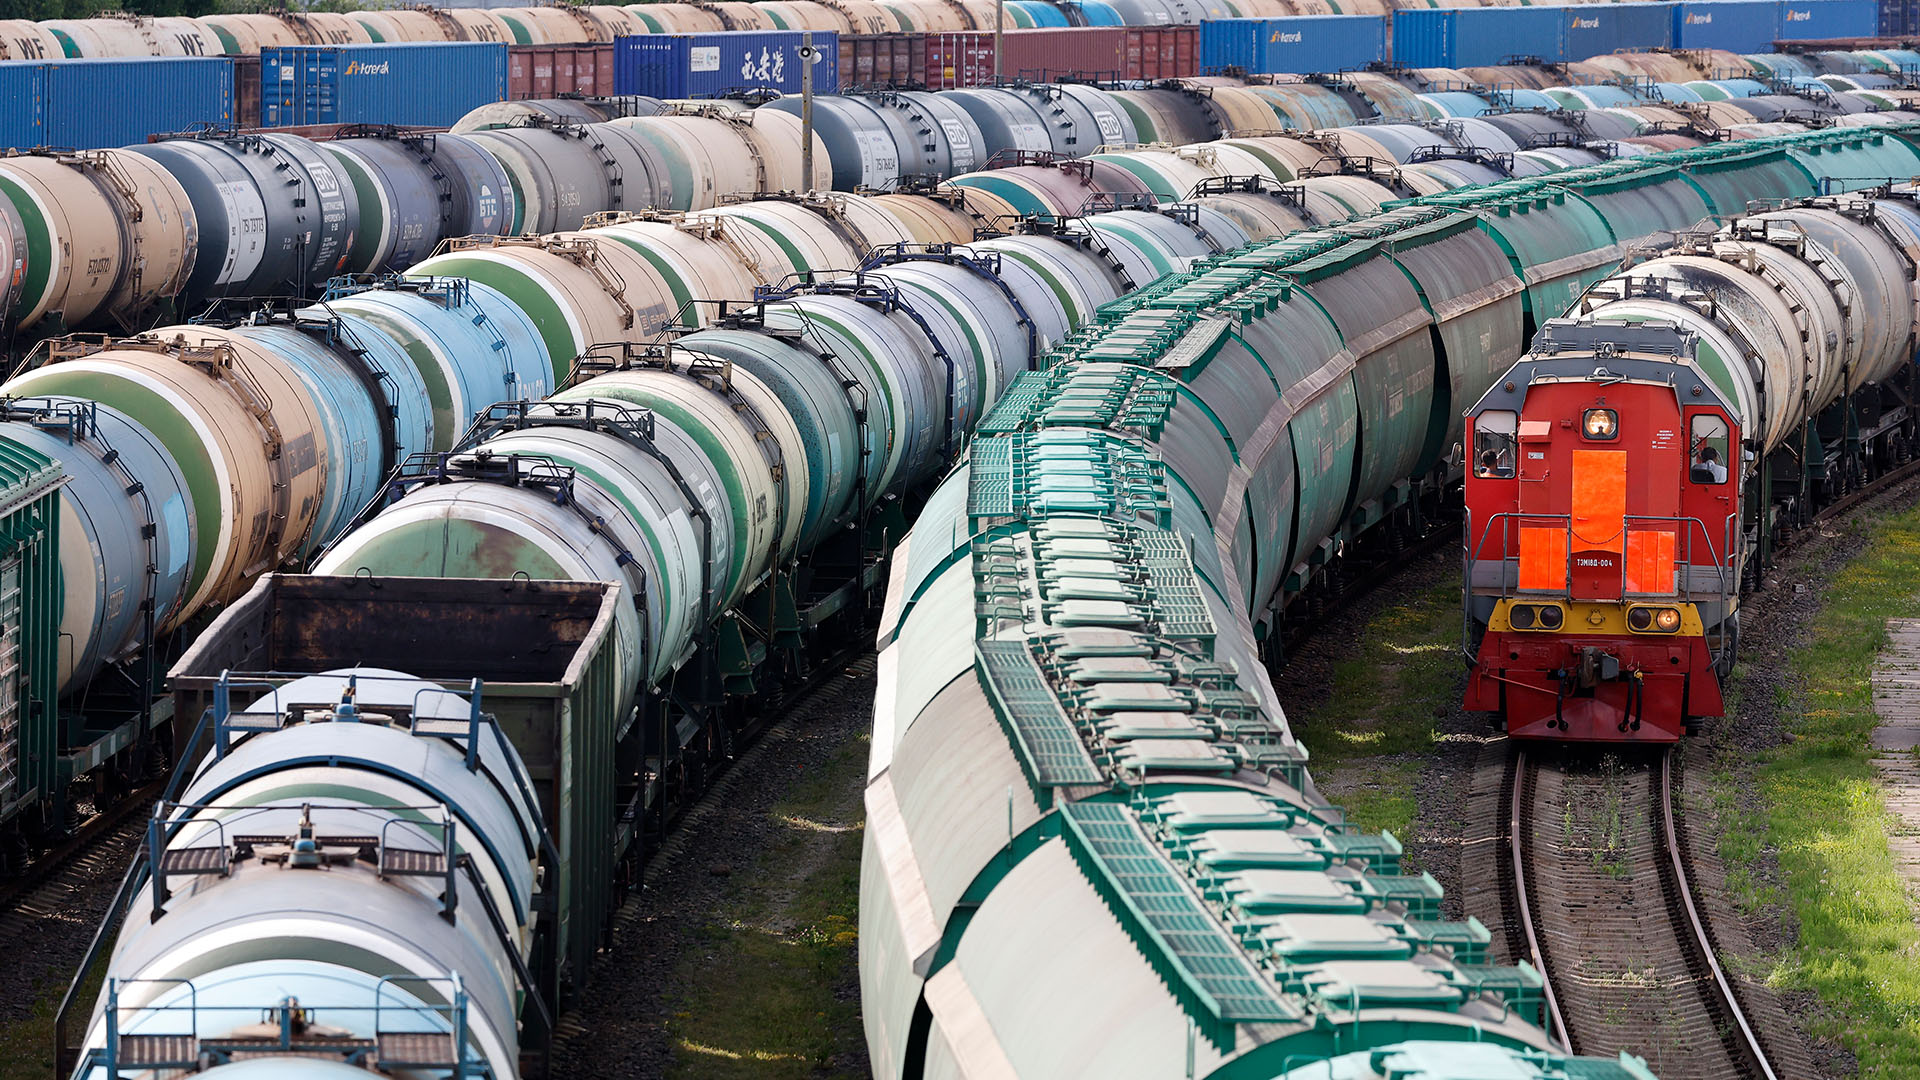 Güterwaggons stehen auf den Gleisen des Güterbahnhofs in Kaliningrad. | picture alliance/dpa/AP